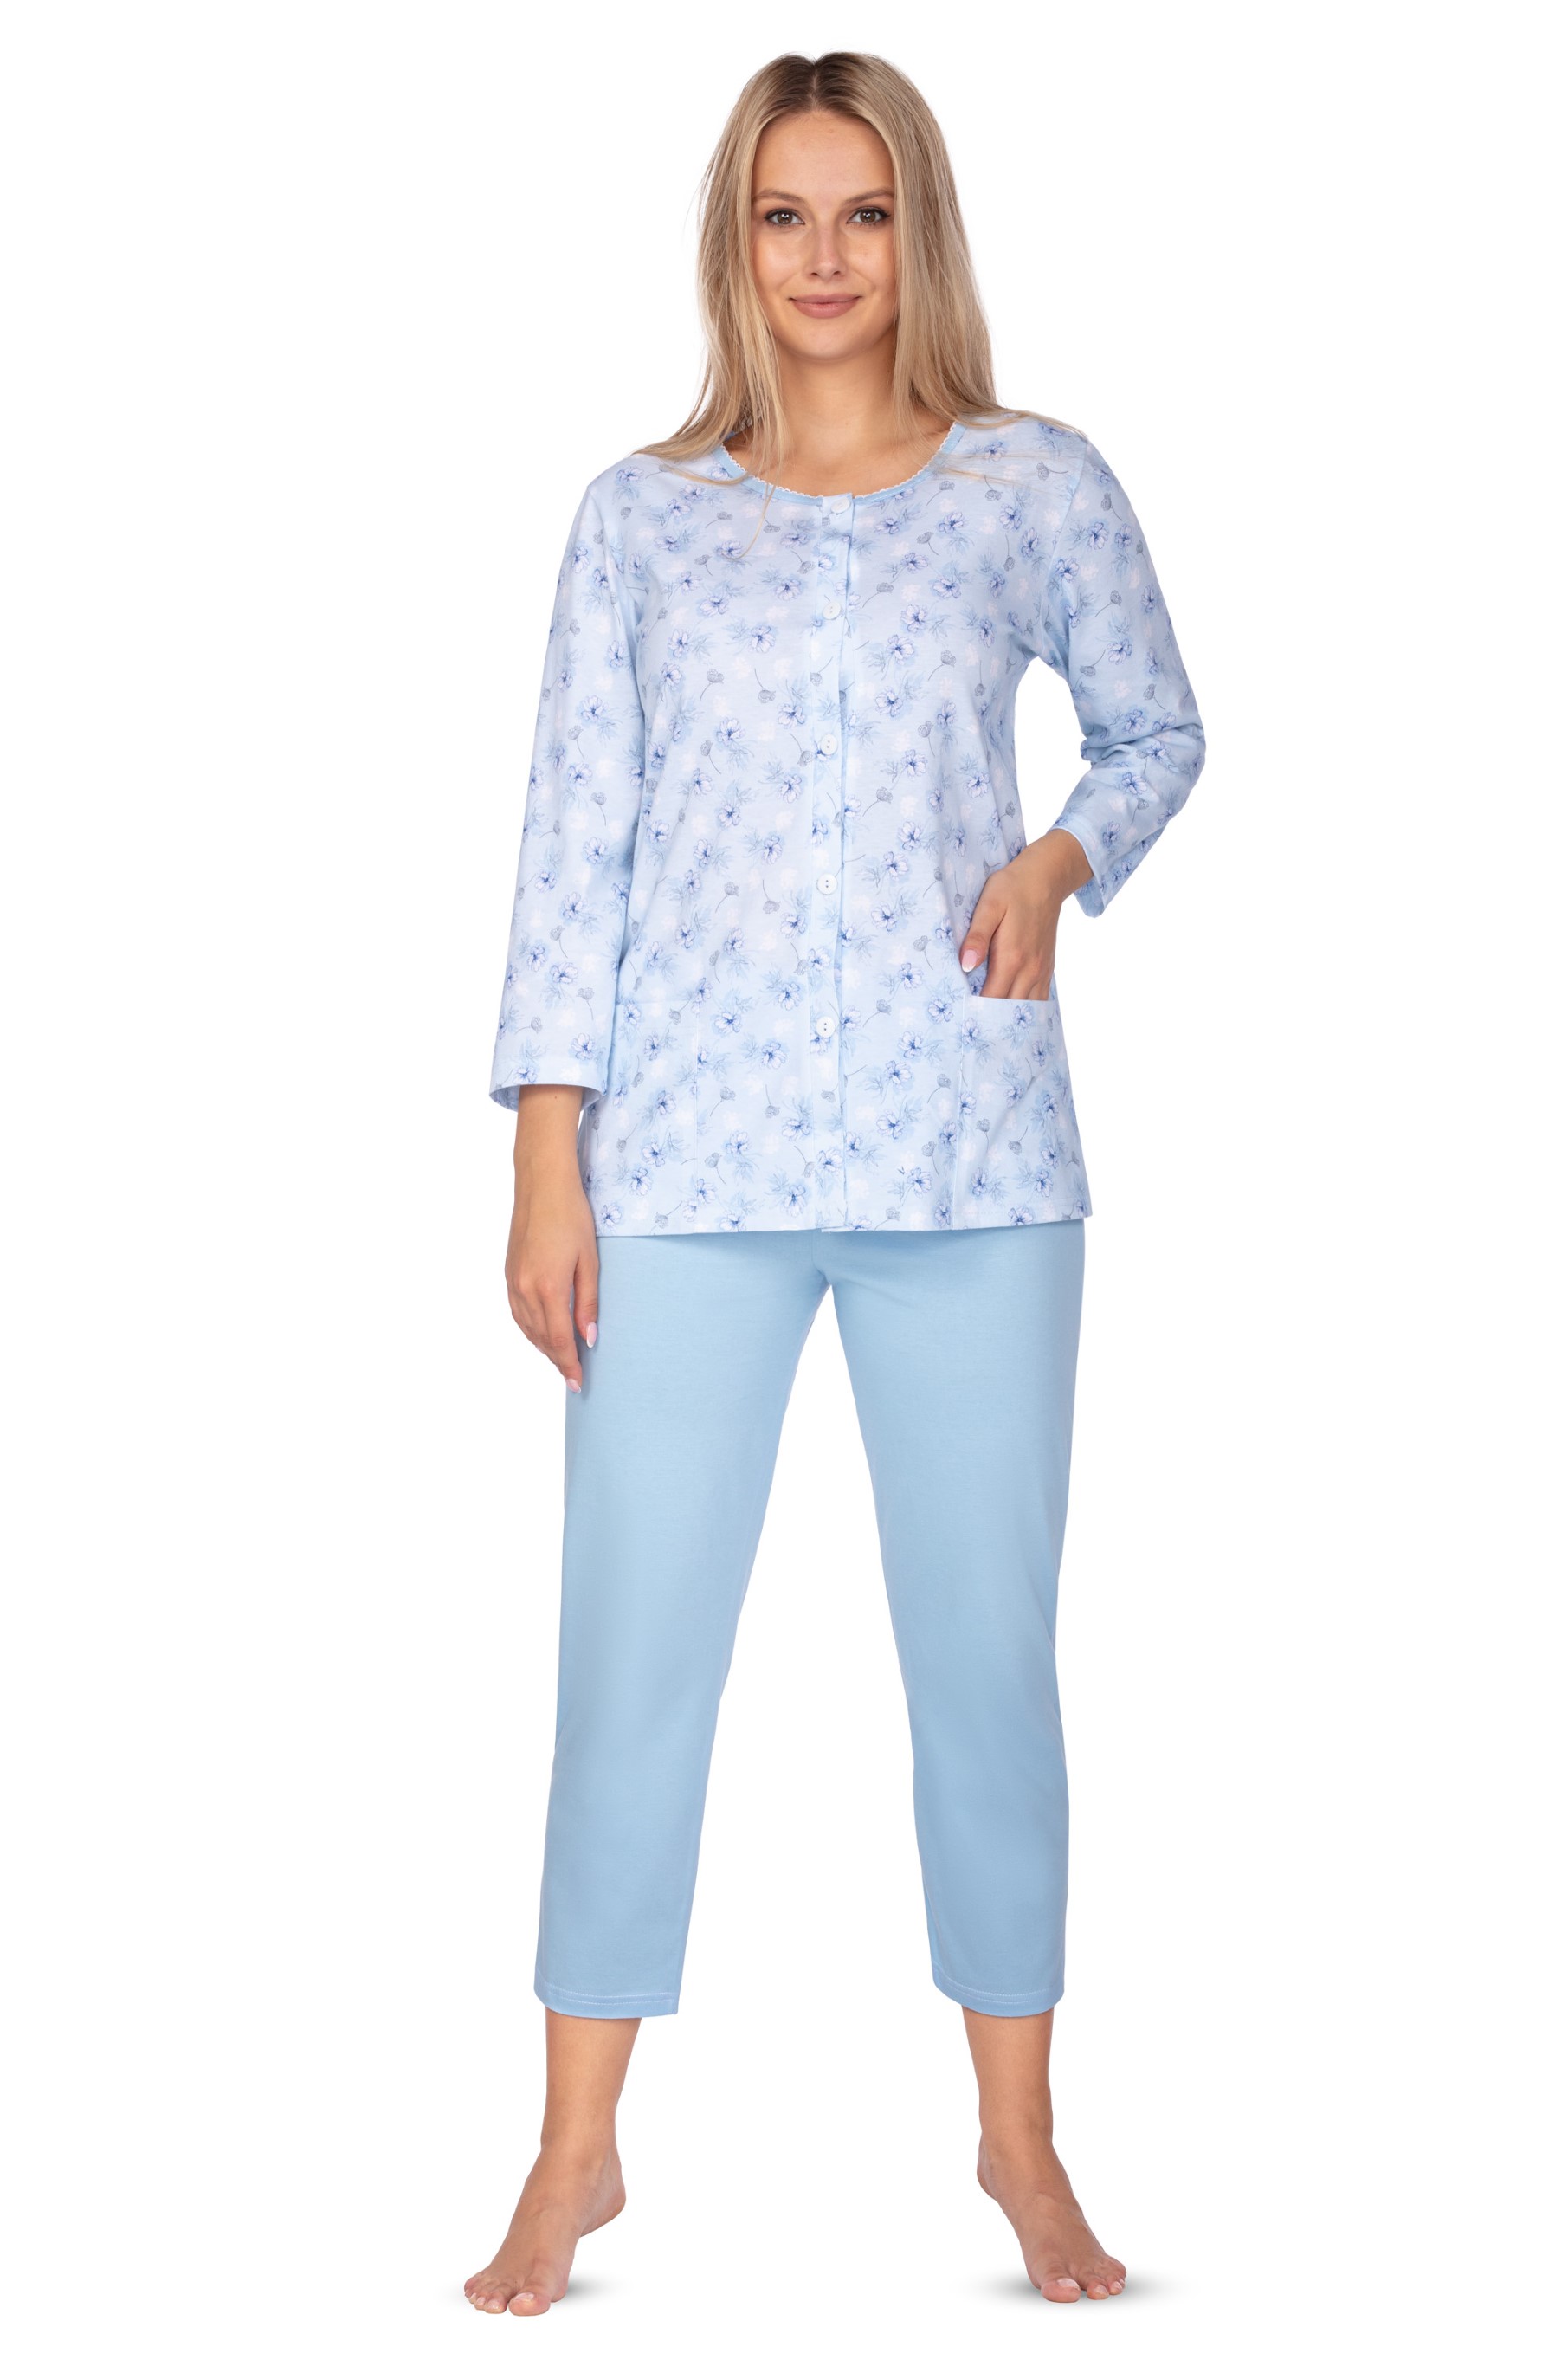 Regina 644 modré 3/4 dámské pyžamo Barva: modrá, Velikost: XL